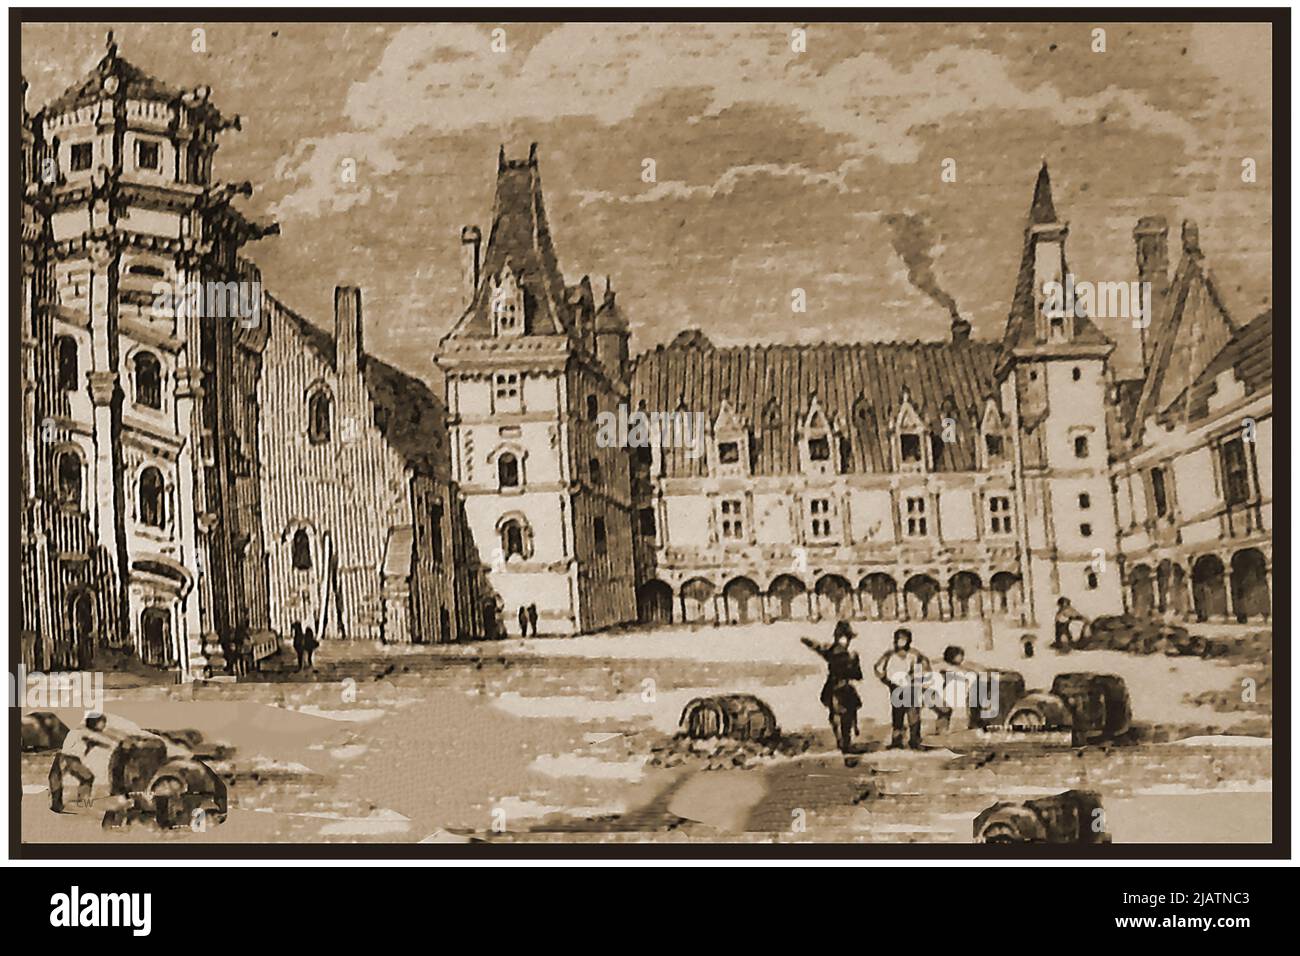 Blick auf den Innenhof des Schlosses Blois aus dem 19.. Jahrhundert. Das Gebäude ist auch als die königliche Château von Blois und Château Royal de Blois bekannt. Jeanne d'Arc besuchte sie 1429, um vom Erzbischof von Reims gesegnet zu werden, bevor sie mit ihren Truppen abreiste, um die Engländer anzugreifen. ------------ Une vue du 19ème siècle sur la cour du château de Blois. Le bâtiment est également connu sous le nom de Château Royal de Blois et Château Royal de Blois. Jeanne d’Arc s’y rendit en 1429 pour être bénie par l’Archevêque de Reims avant de partir avec ses forces pour attaquer les Anglais. Stockfoto